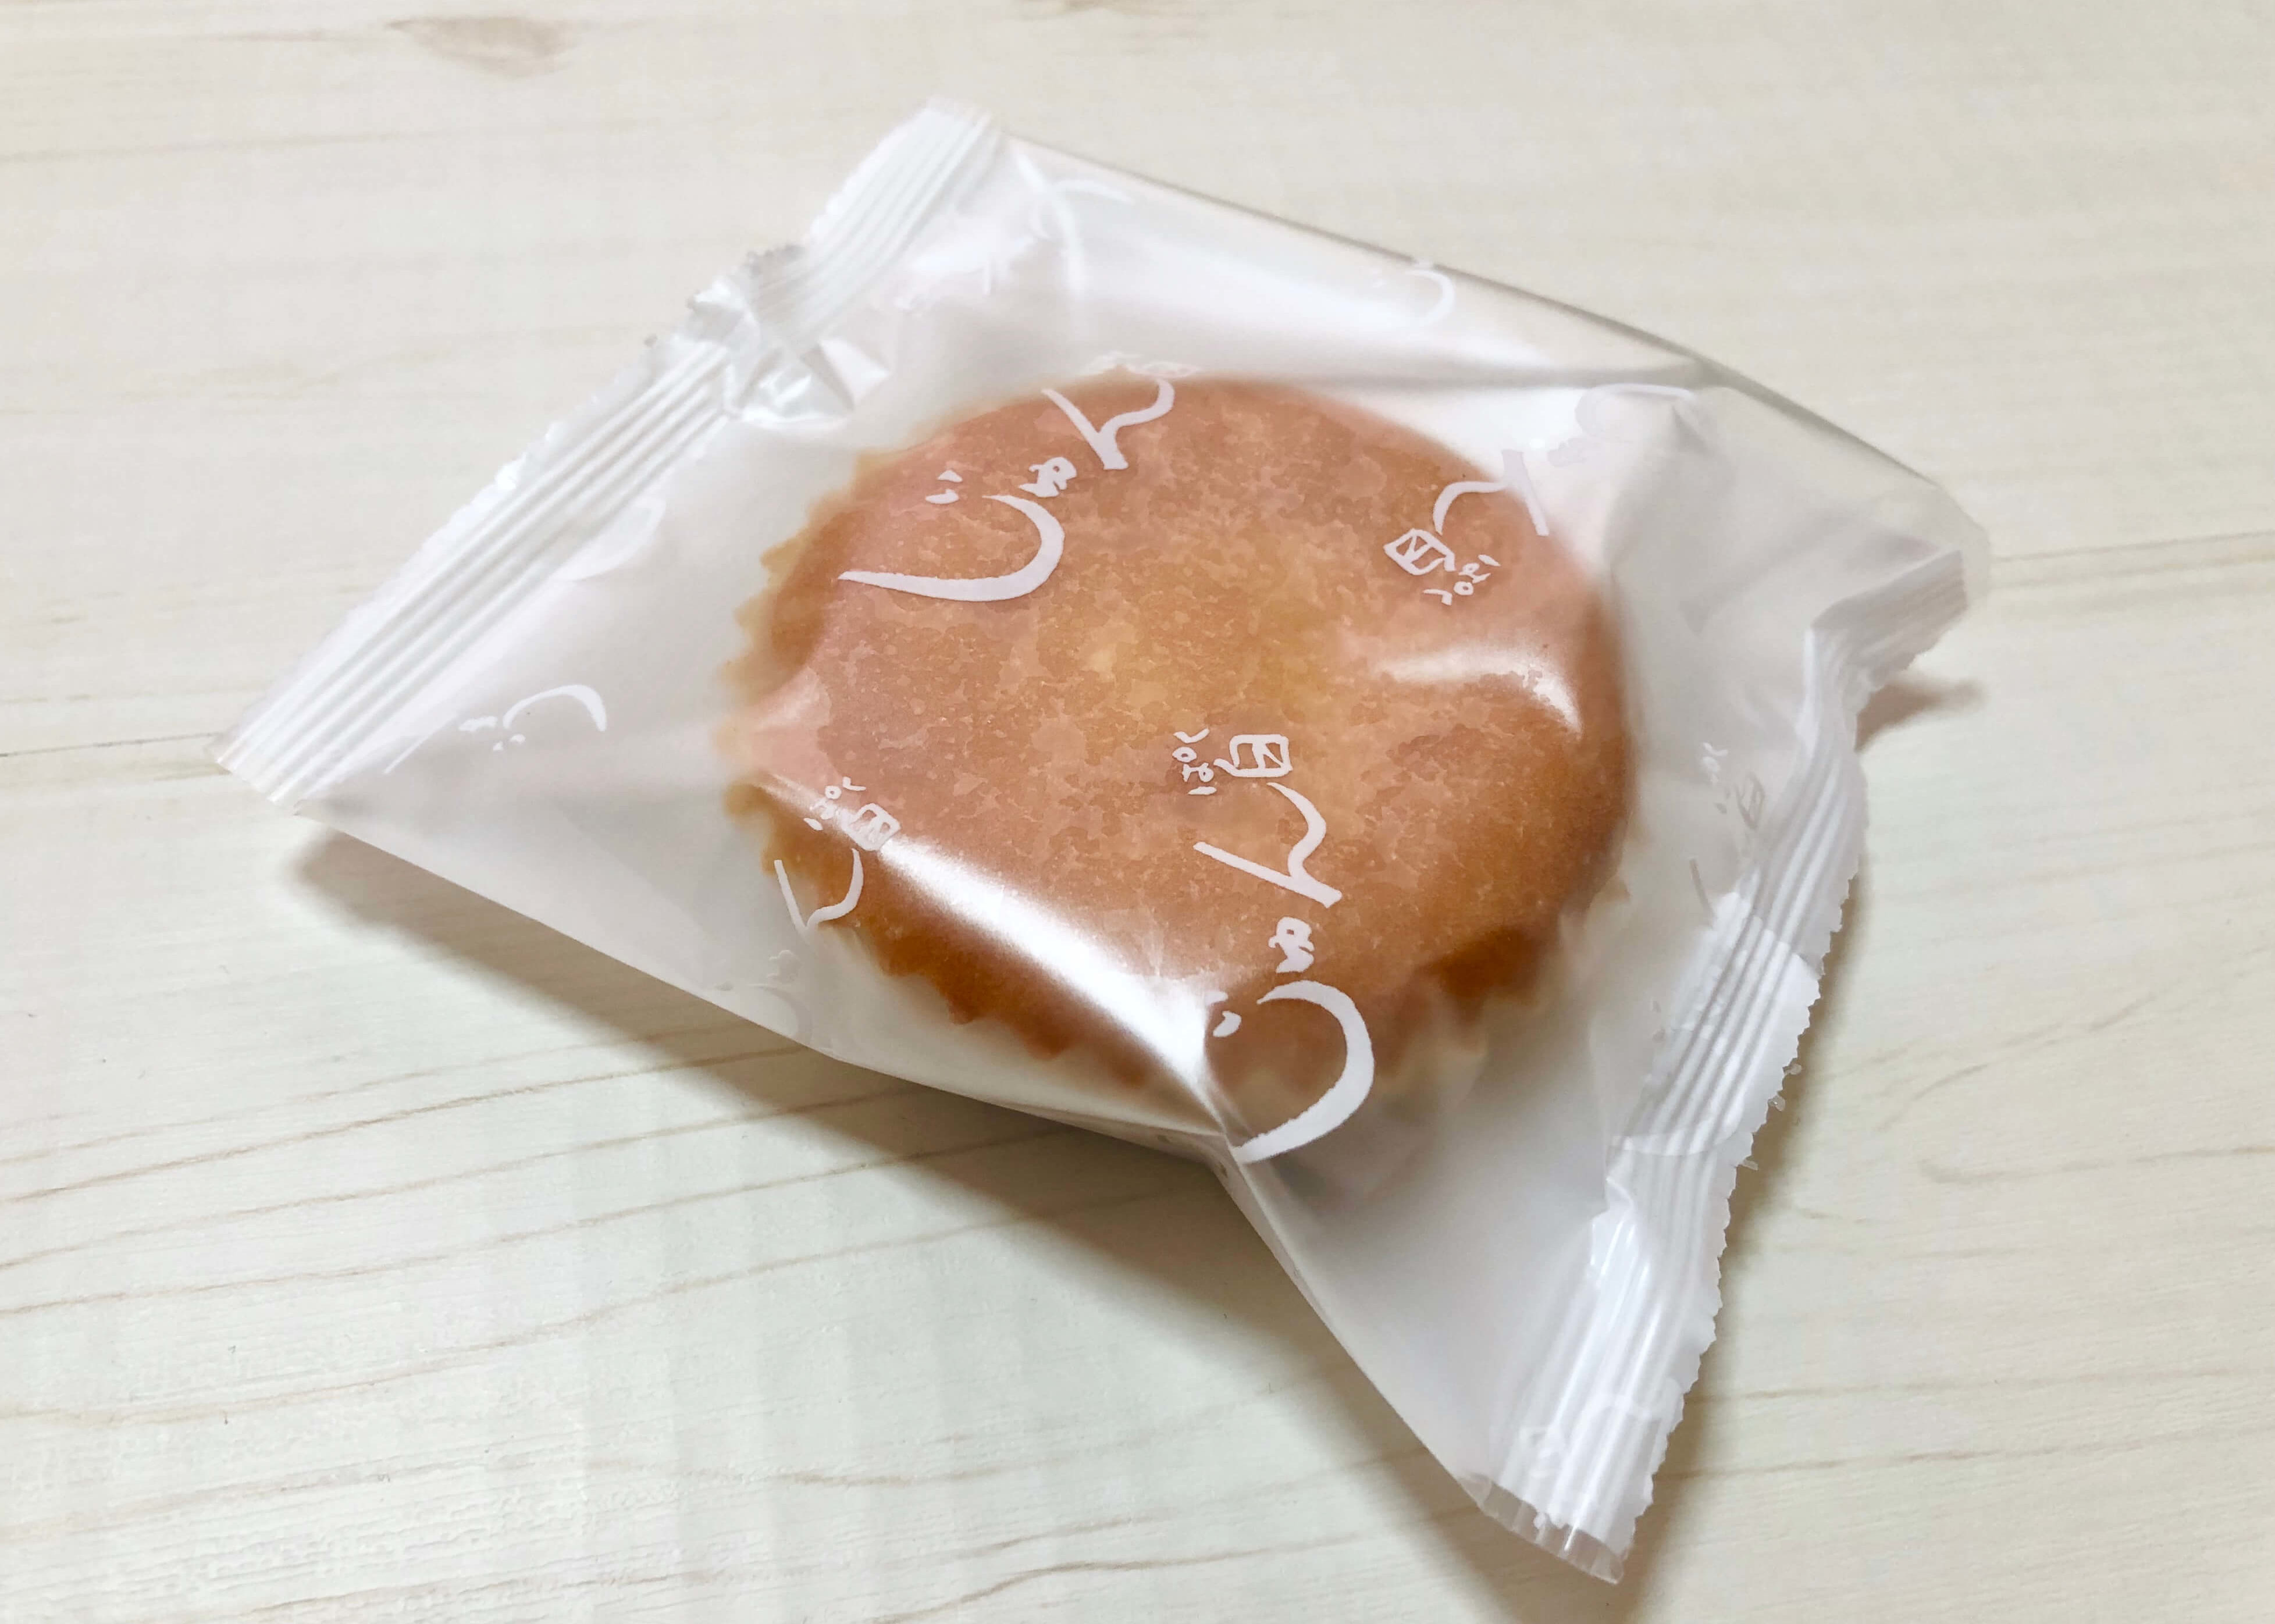 富山市の人気ケーキ店 Jun 特別スタンプキャンペーン実施中 行かなきゃ損じゃ 富山のランチ お出かけ 遊びのおすすめ情報 ココなび